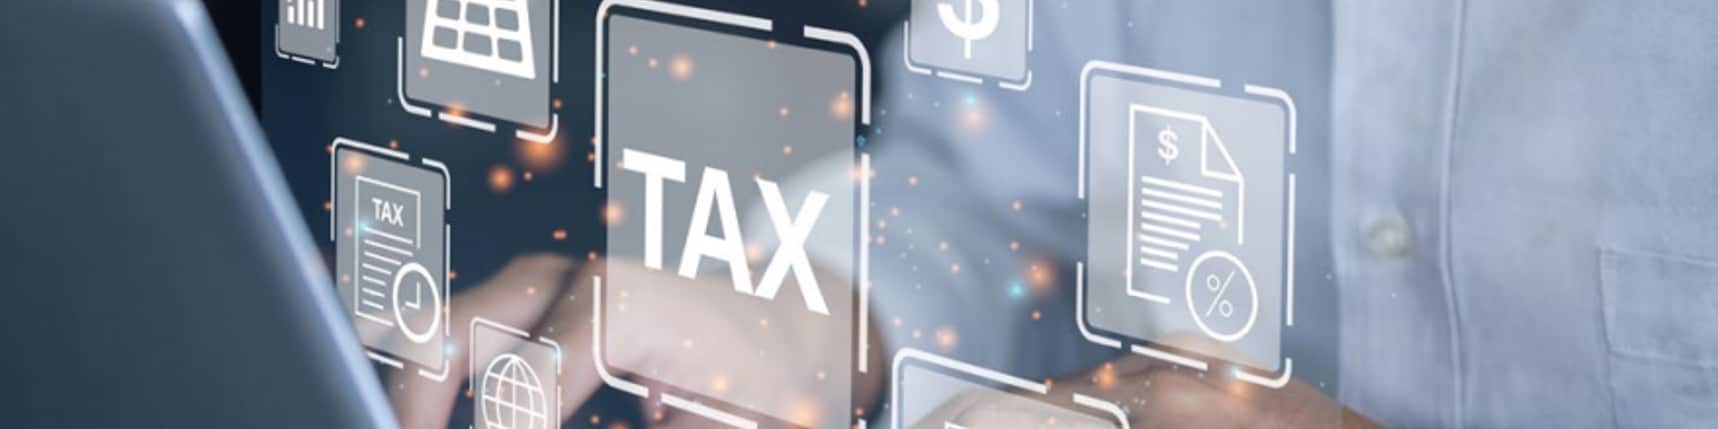 拥抱税务数字化转型